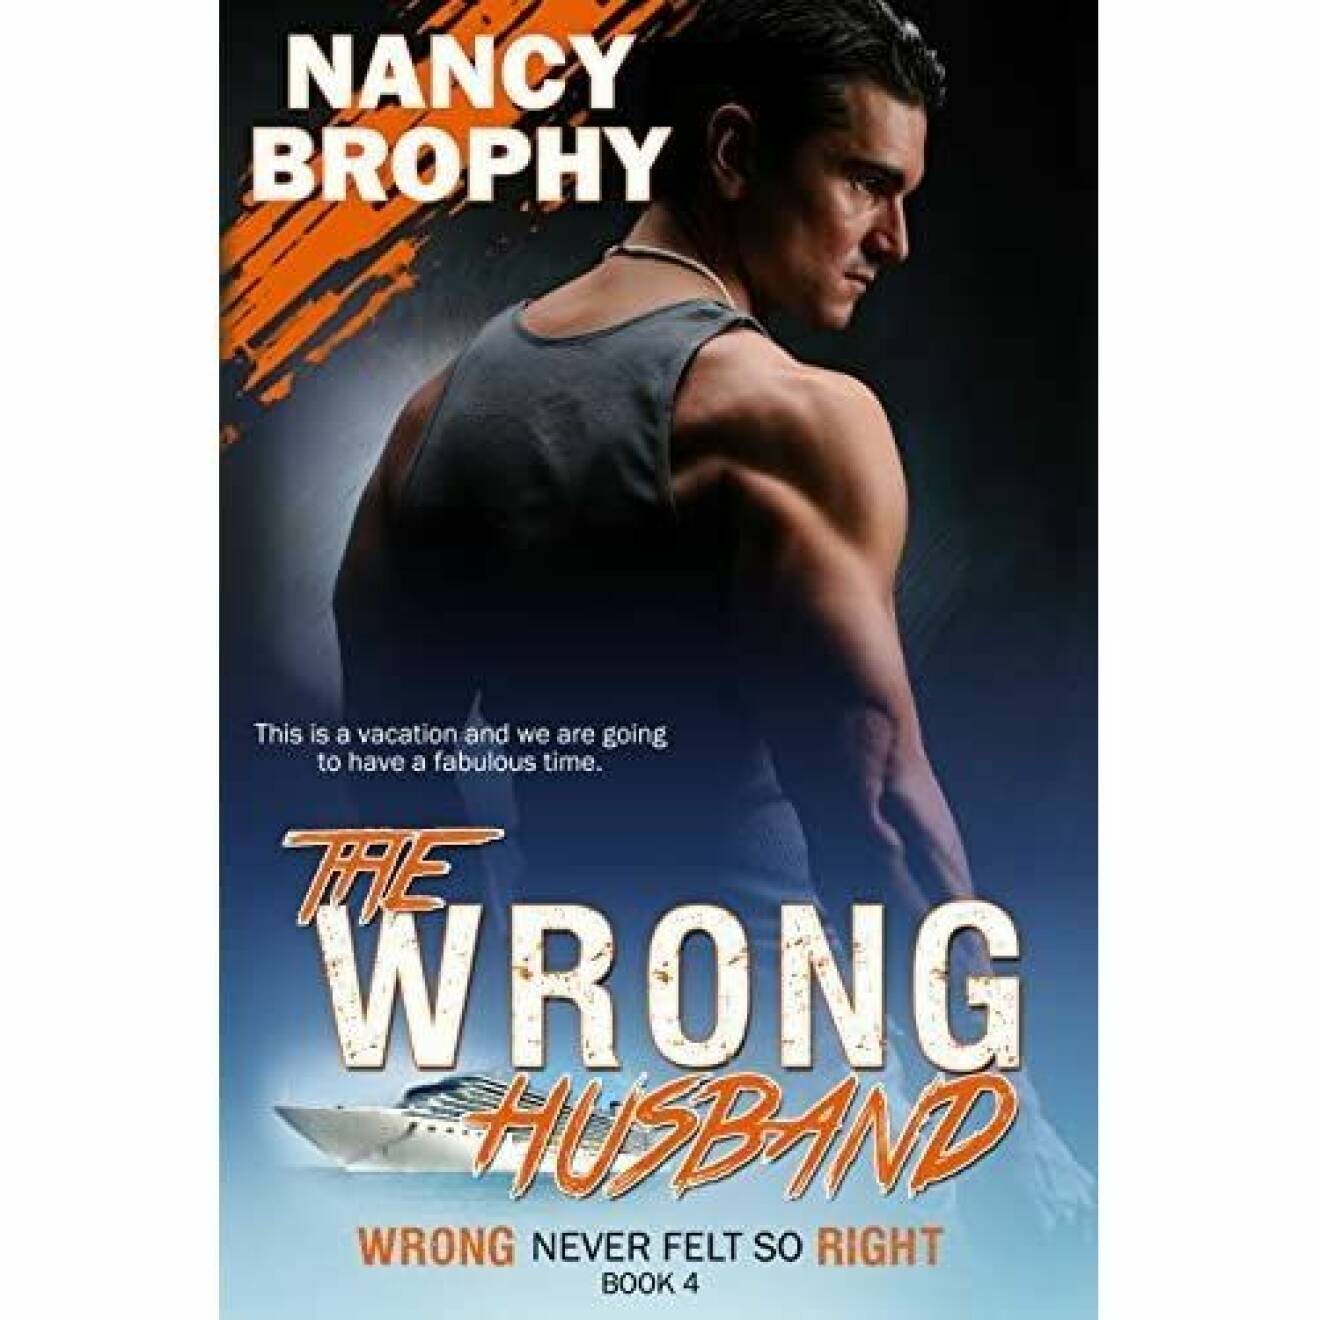 Nancy Brophy skrev "The wrong husband"